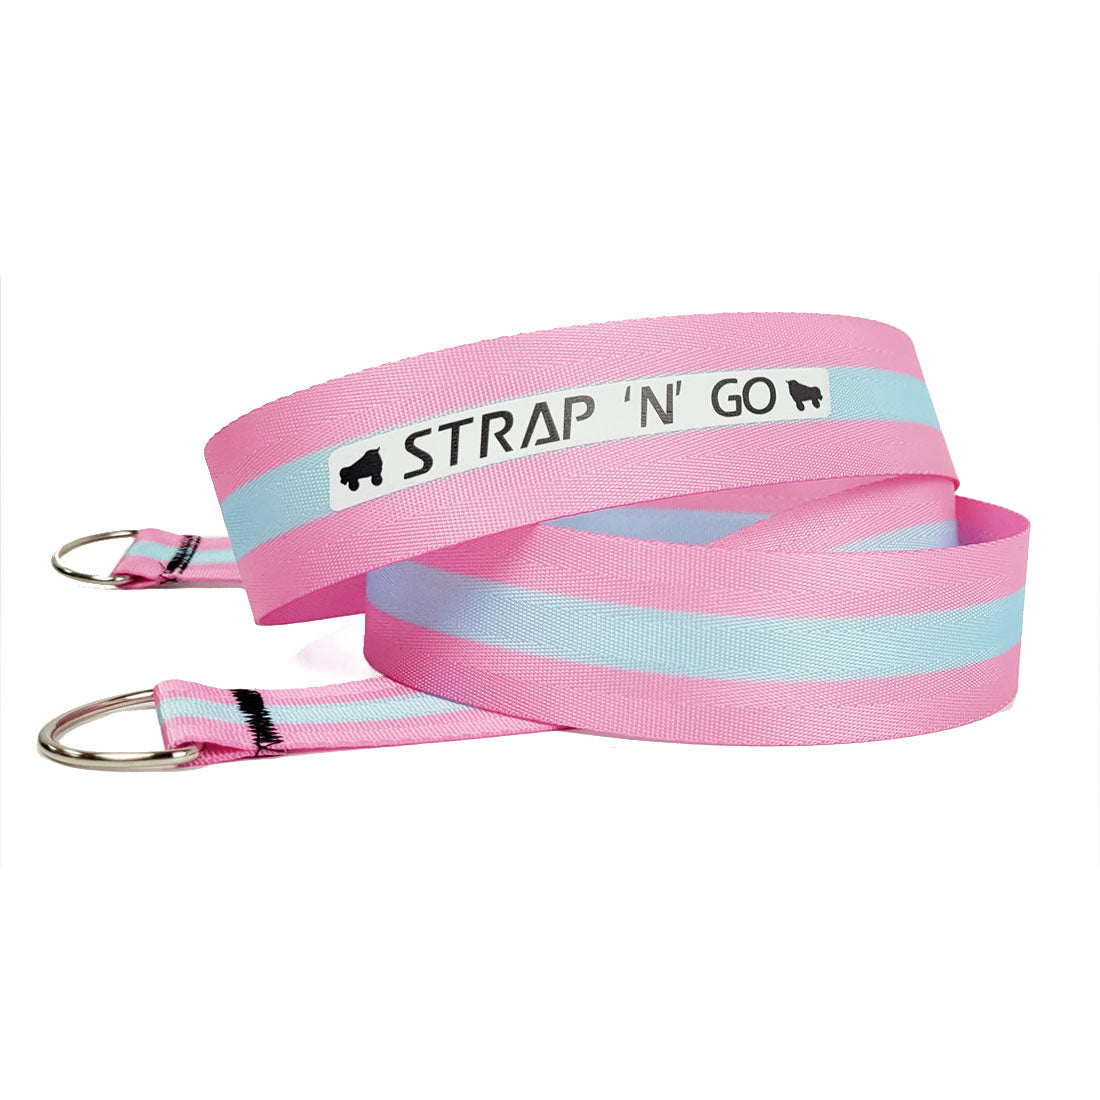 Strap N Go Skate Noose/Leash - Patterns Stripe Pink Blue Roller Skate Accessories